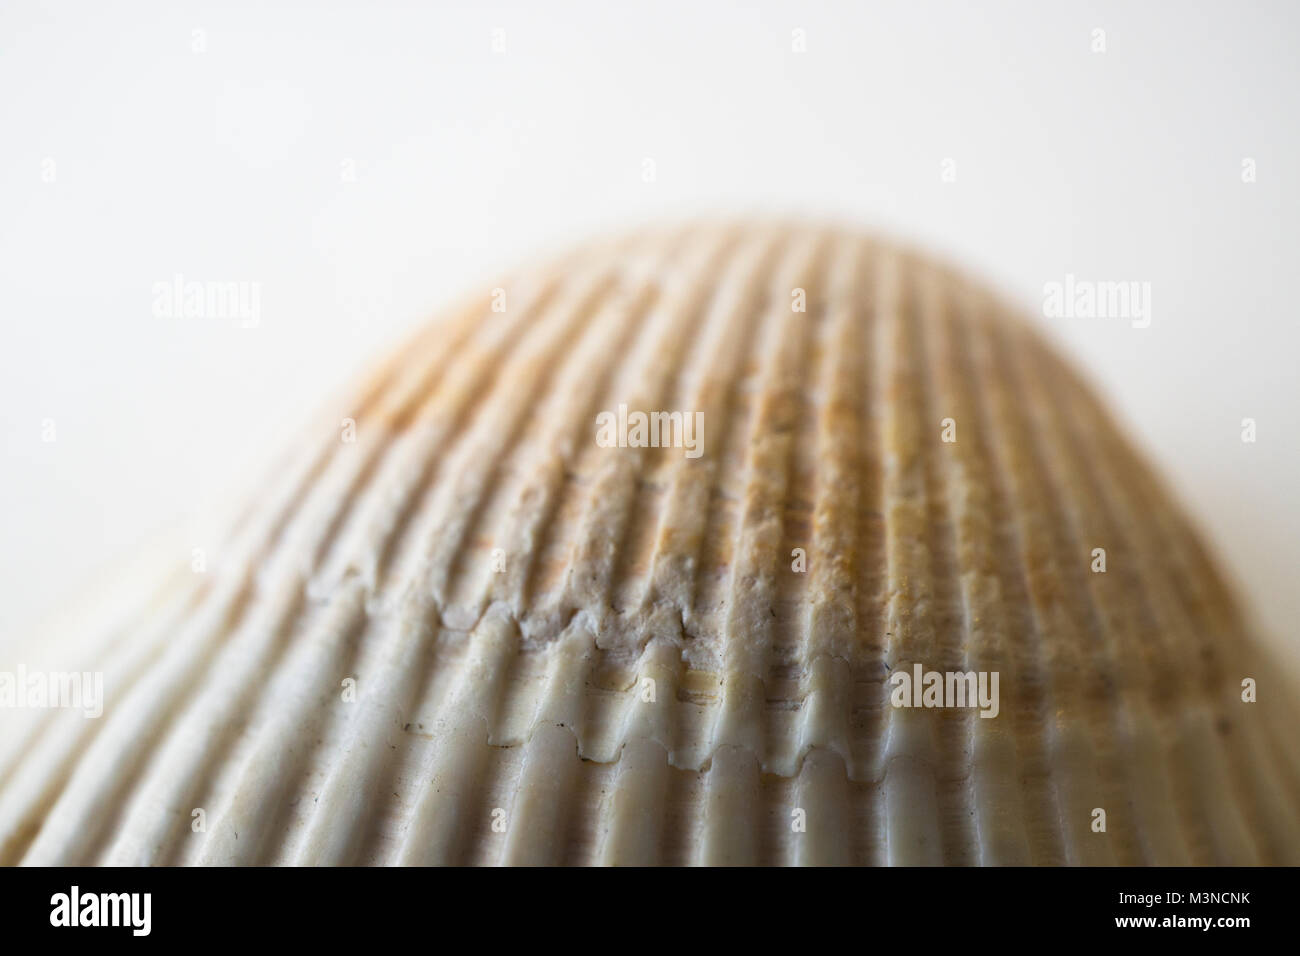 Acercamiento de las costillas de una concha de mar de berberechos. Foto de stock